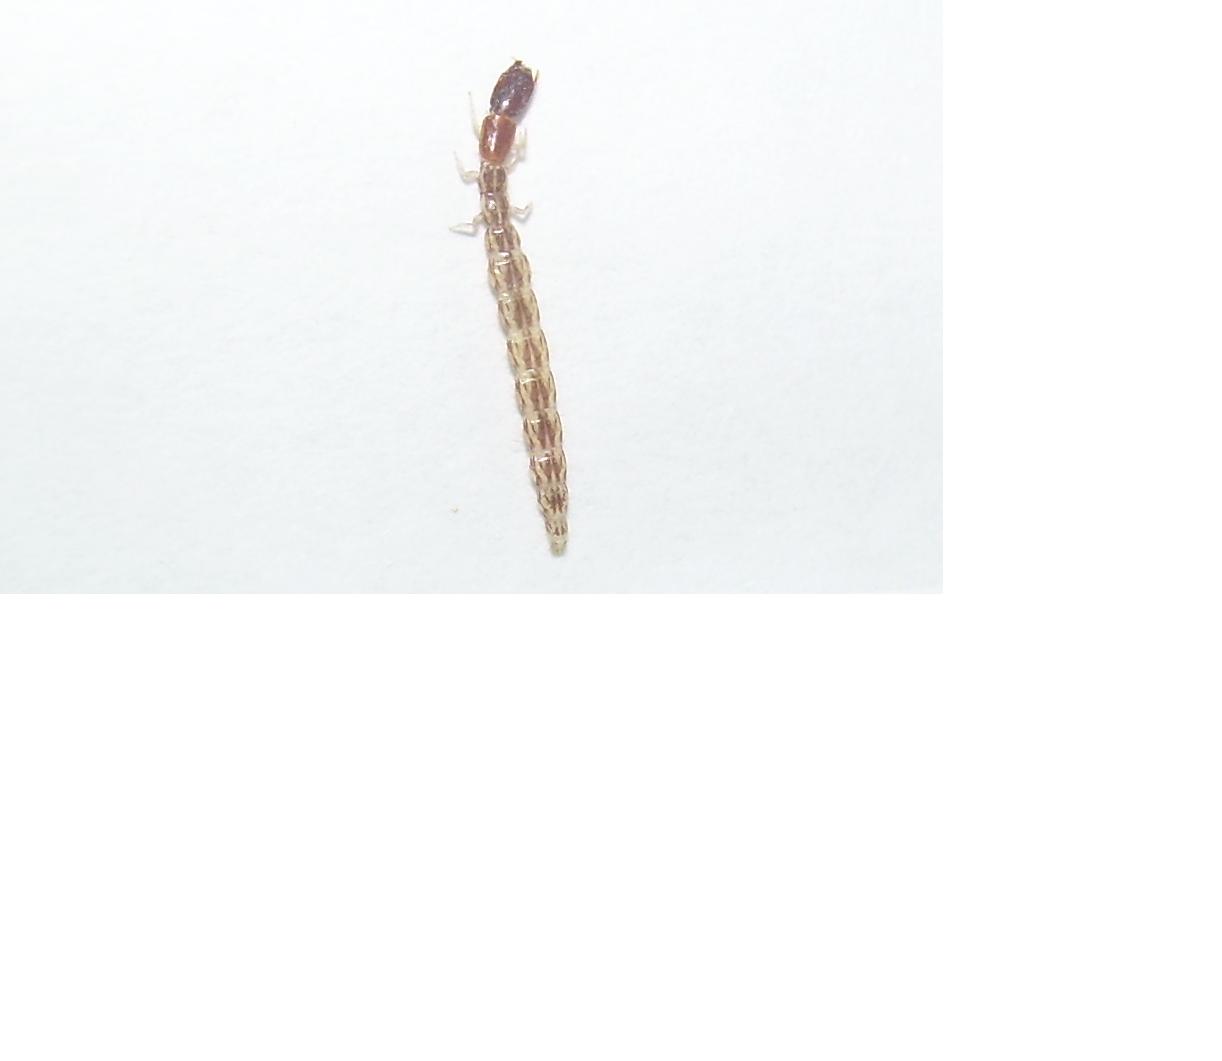 Larva Rafidiottero